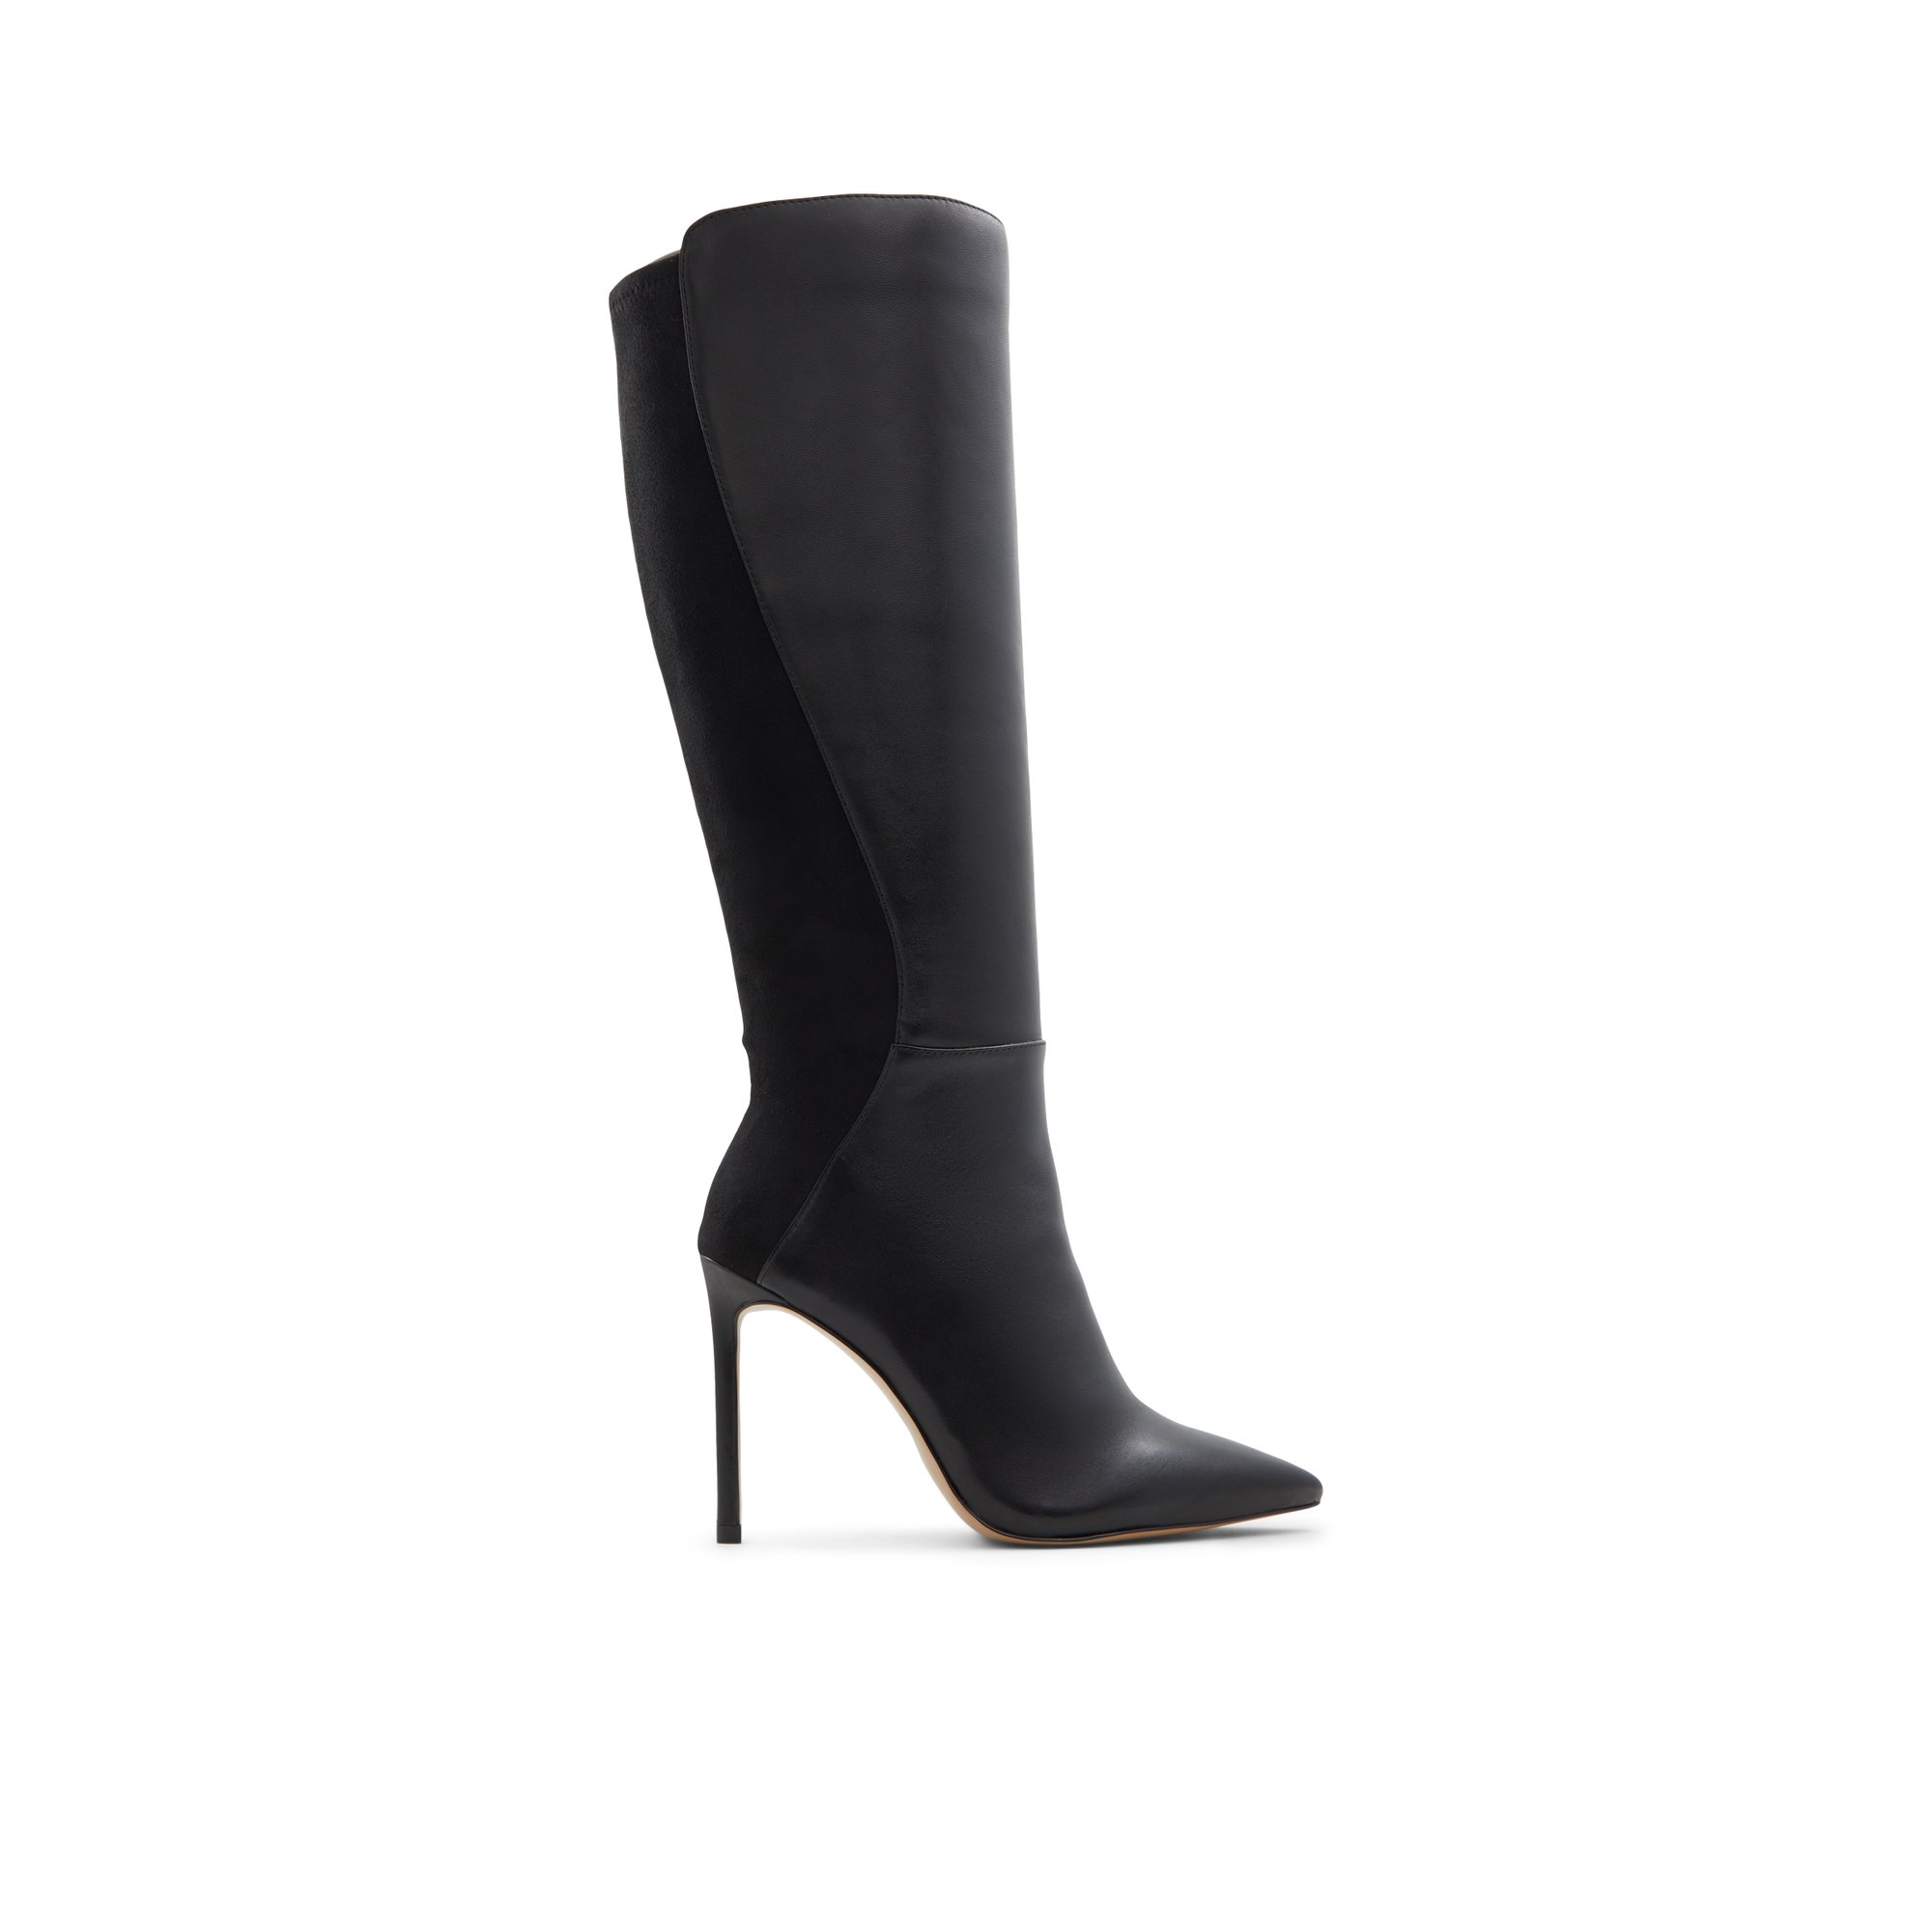 ALDO Milann - Women's Boots Dress - Black